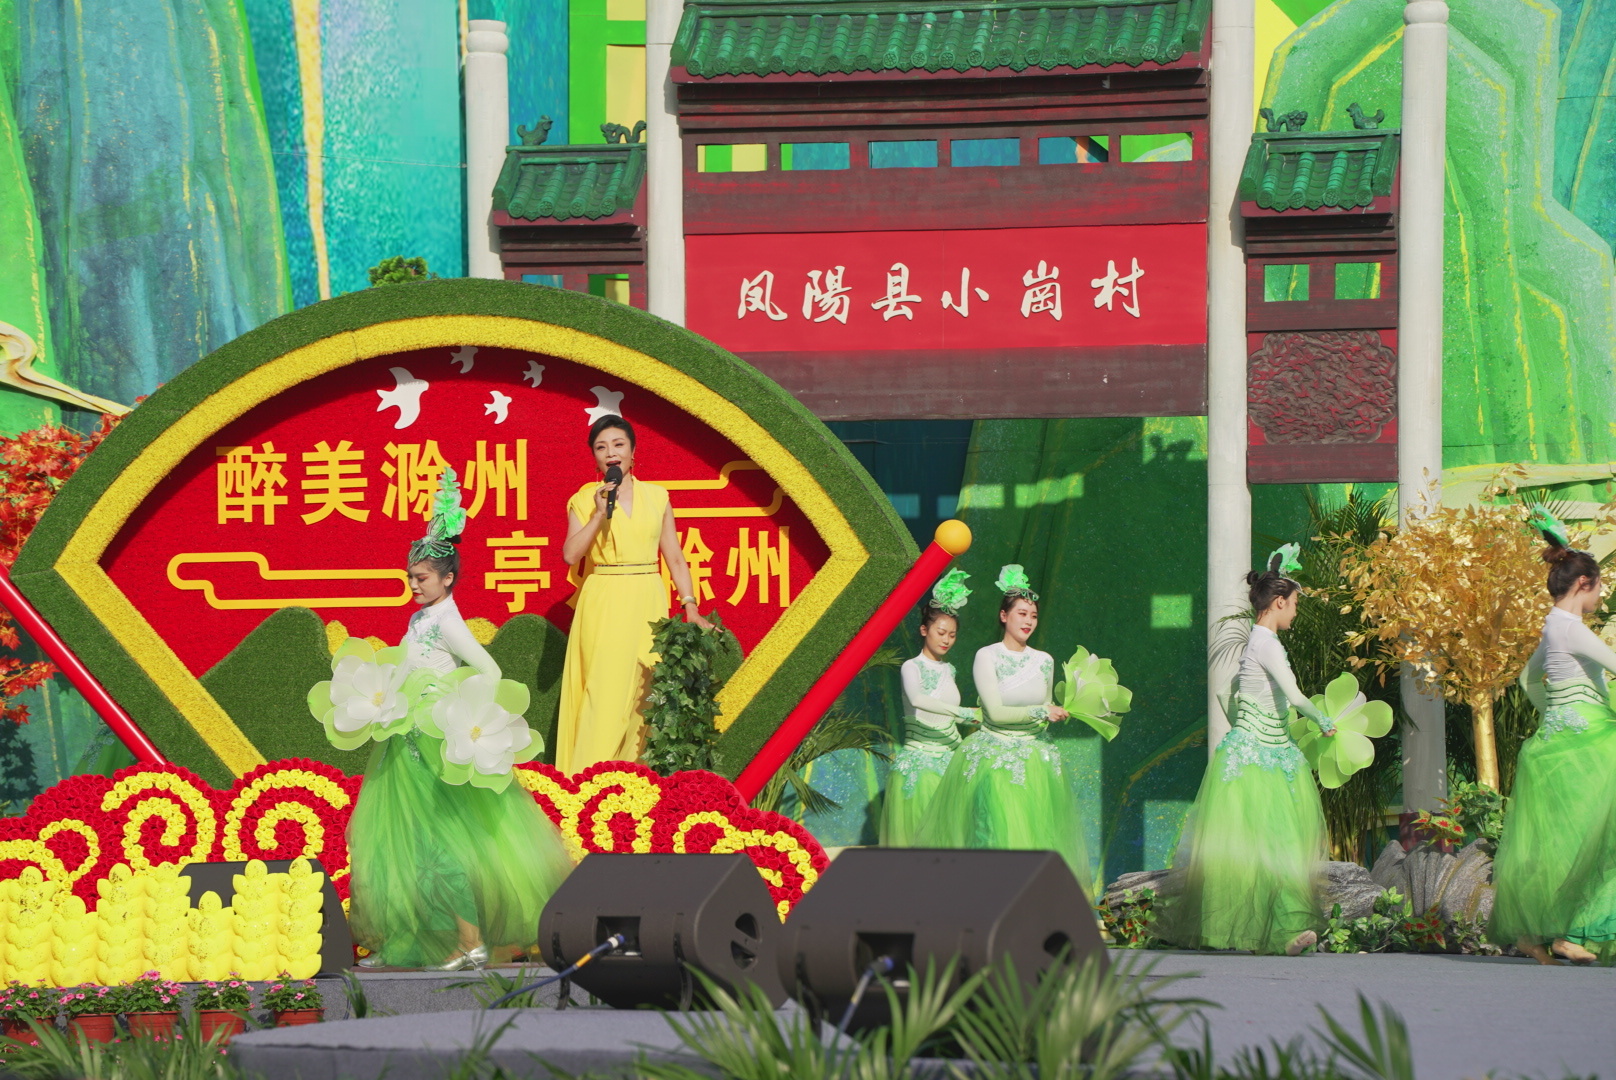 放歌“希望的田野” 礼赞“农民丰收节”——第八届中国农民歌会暨“唱支山歌给党听”大家唱群众歌咏成果展示活动在滁州唱响